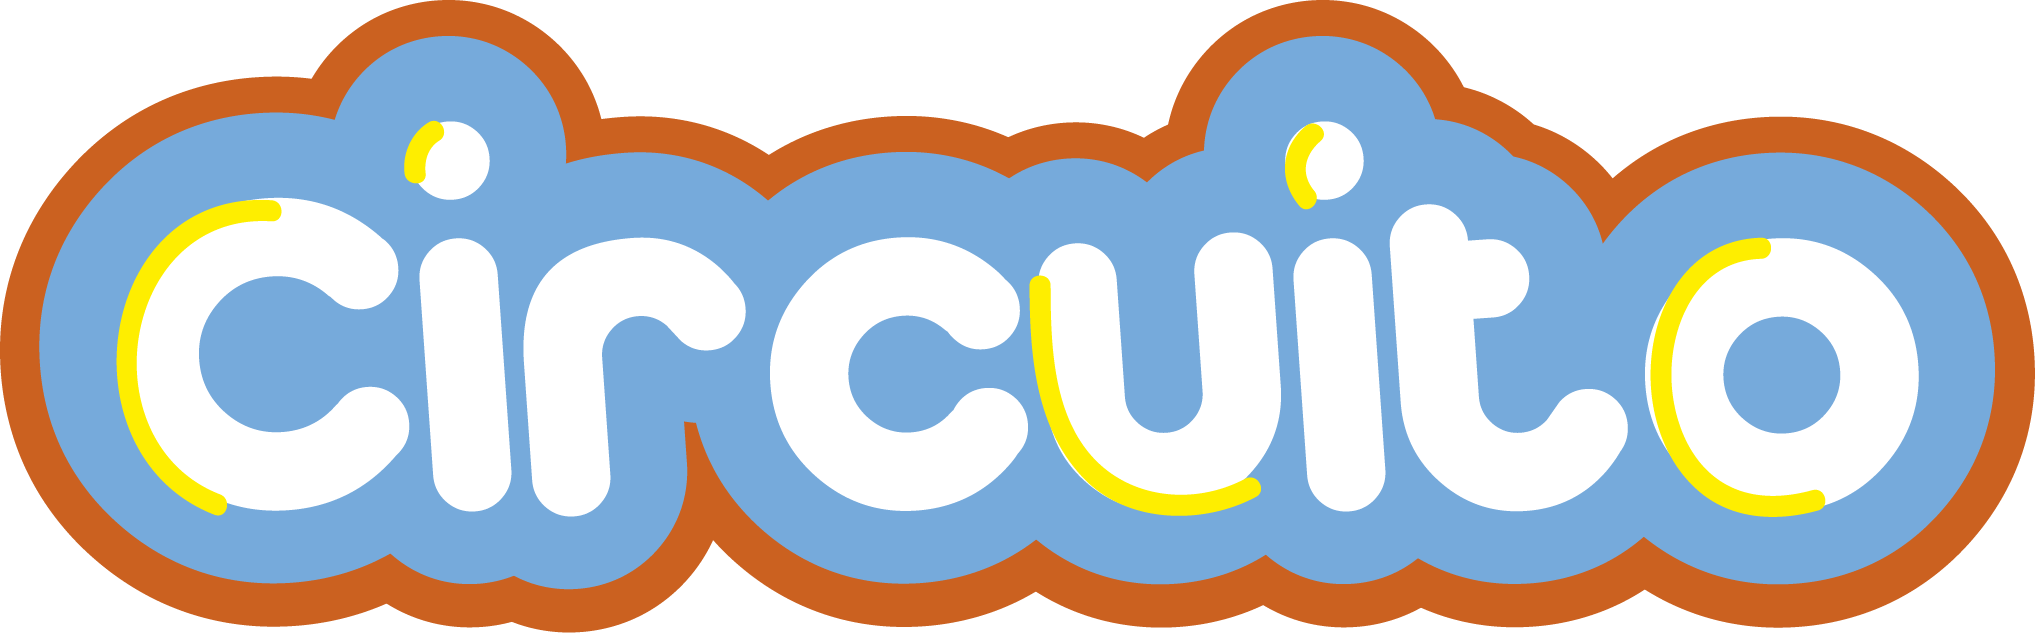 circuito logo